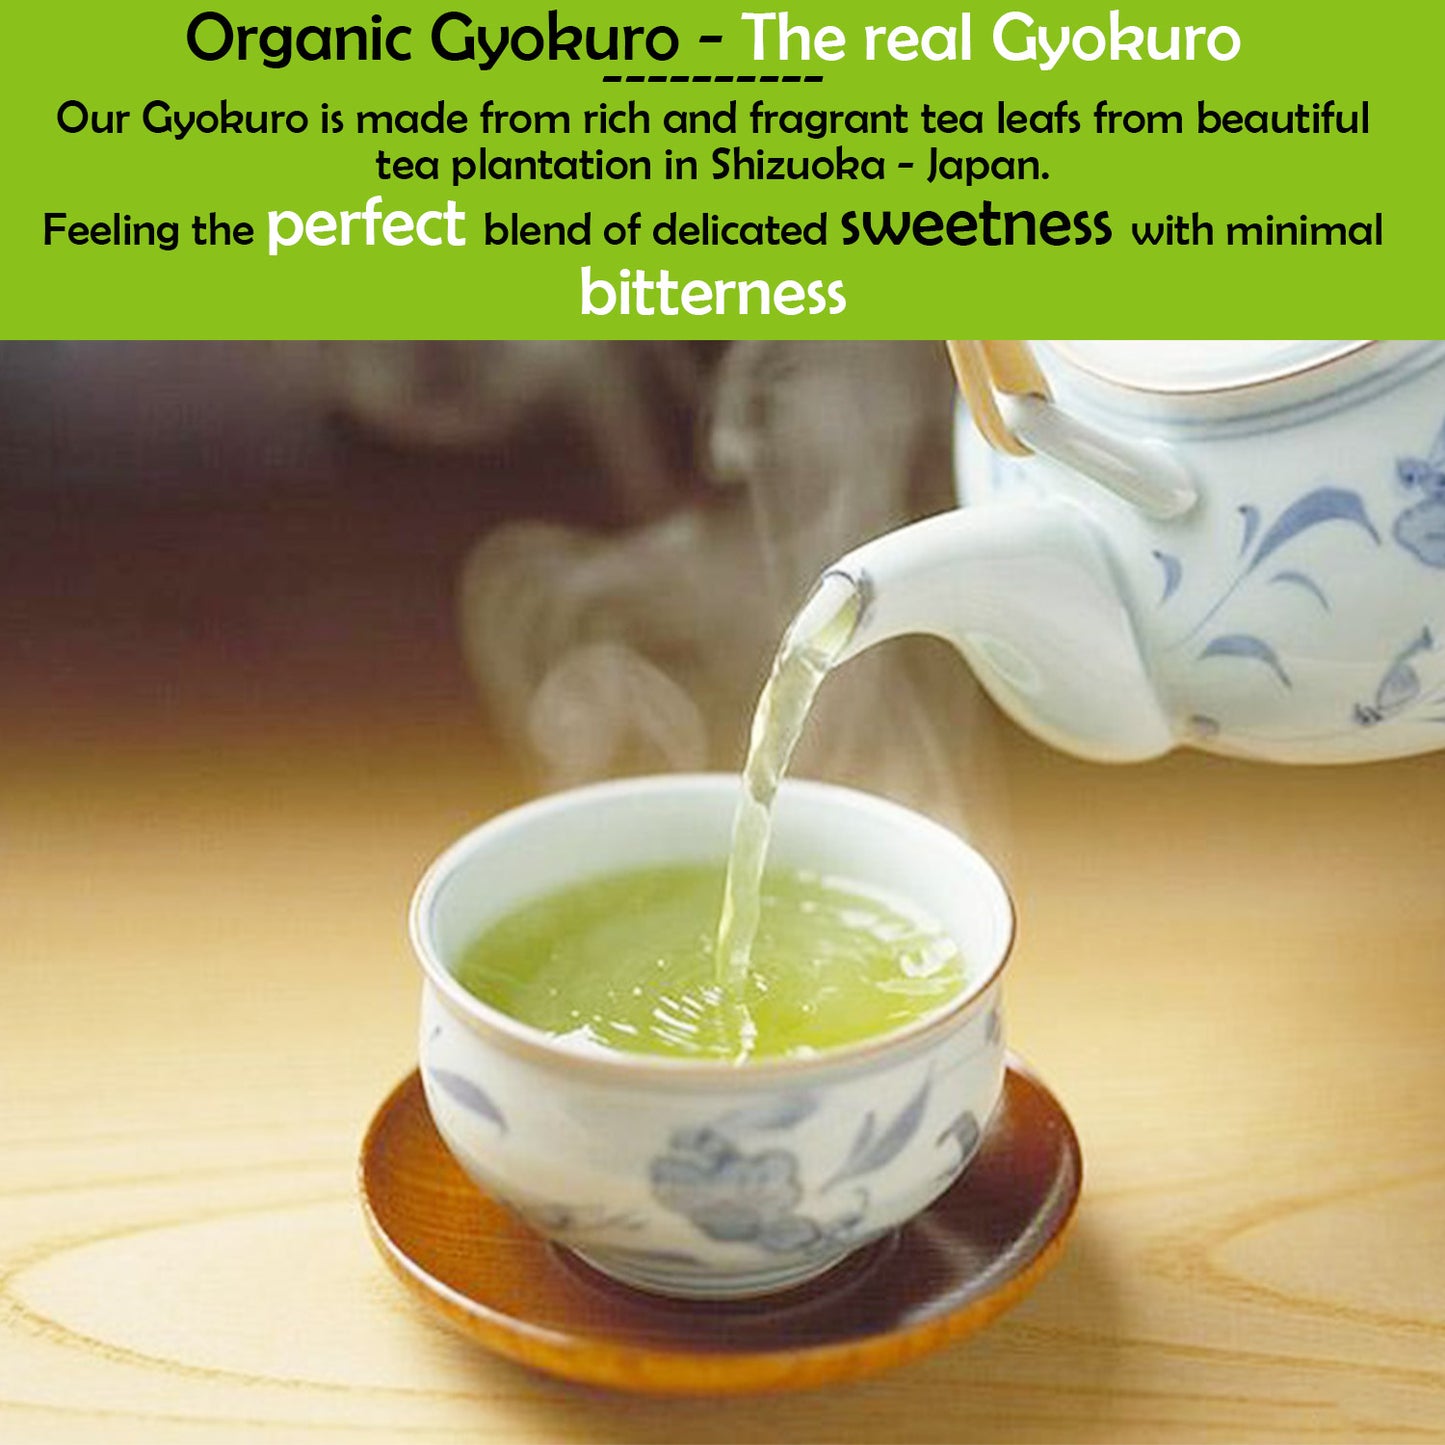 Trà Nhật Bản Hữu Cơ Cao Cấp 玉 露 Ngọc Sương Organic Gyokuro 50gram (Japanese Organic Premium Gyokuro Green Tea Loose Leaf ) - Made In Japan Thương Hiệu Otsuka Green Tea Co.,Ltd.